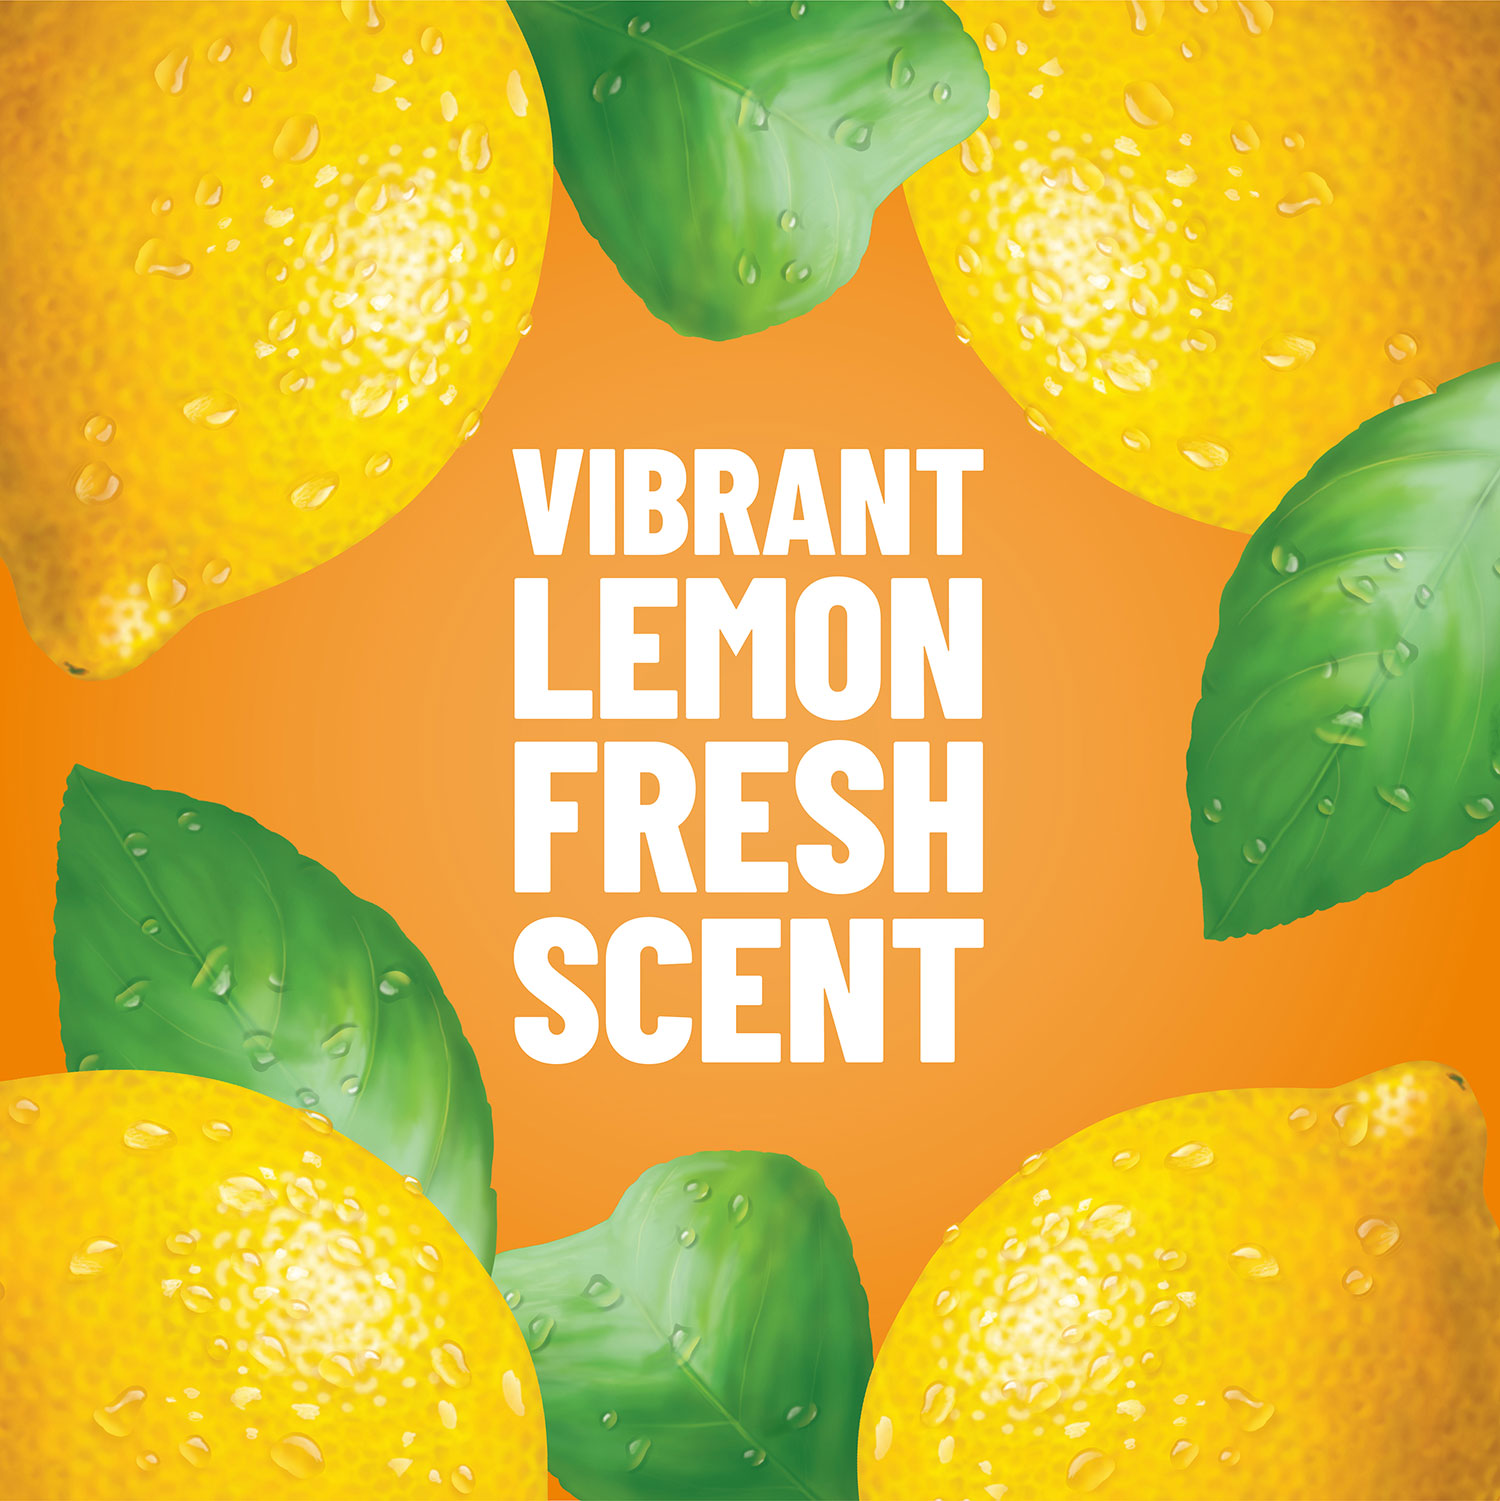 Imagen vibrante de aroma fresco de limón